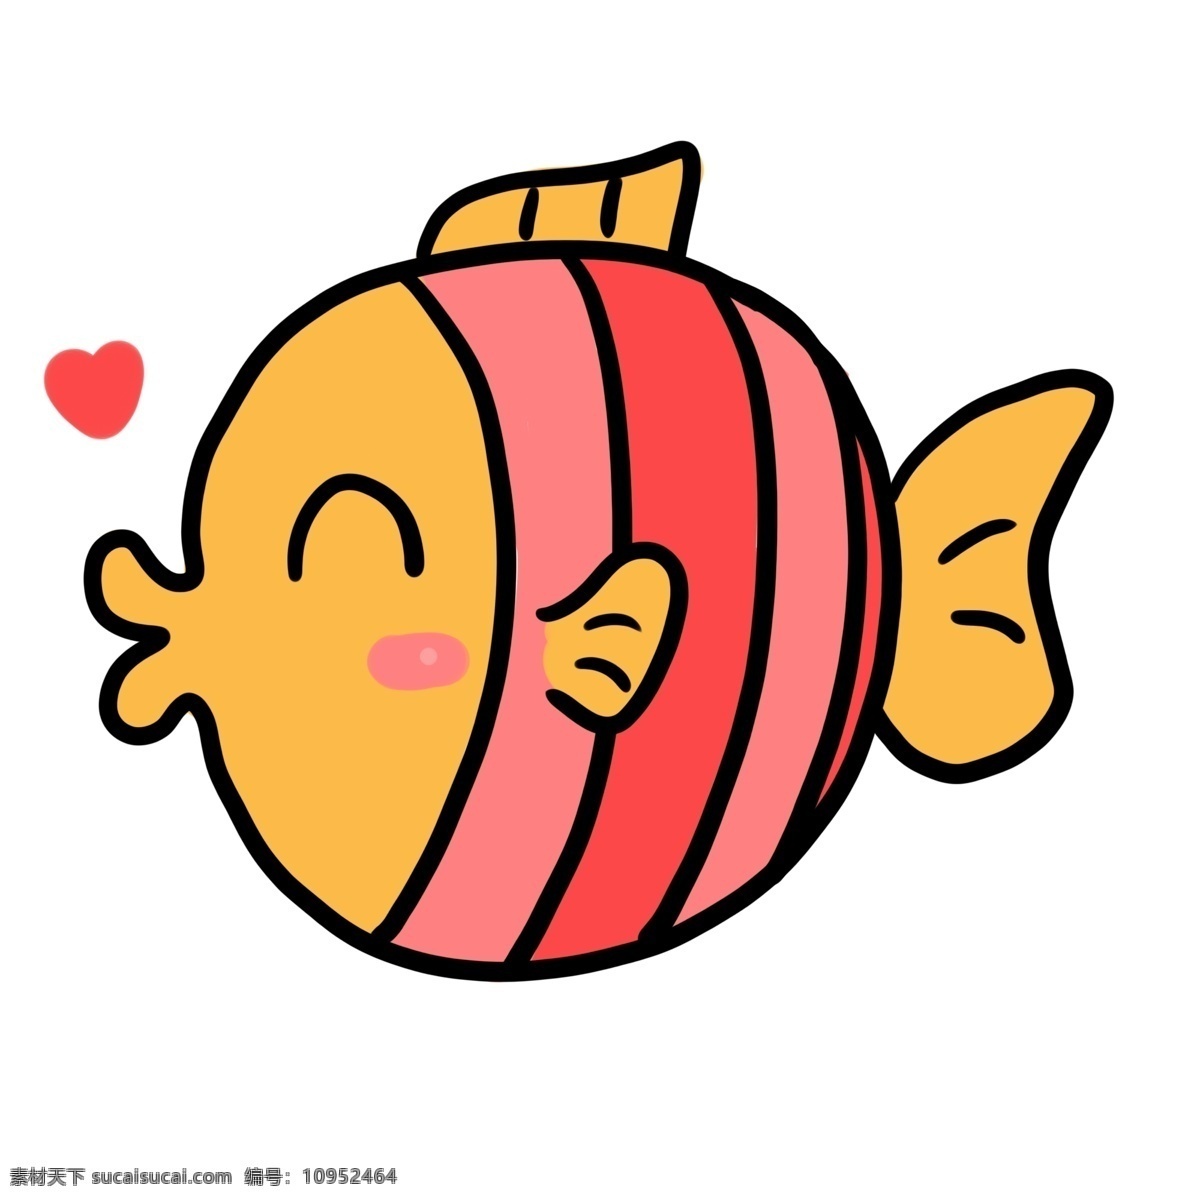 卡通 可爱 世界 海洋 日 亲吻 鱼 亲吻鱼 世界海洋日 小动物 可爱动物 创意设计 动物